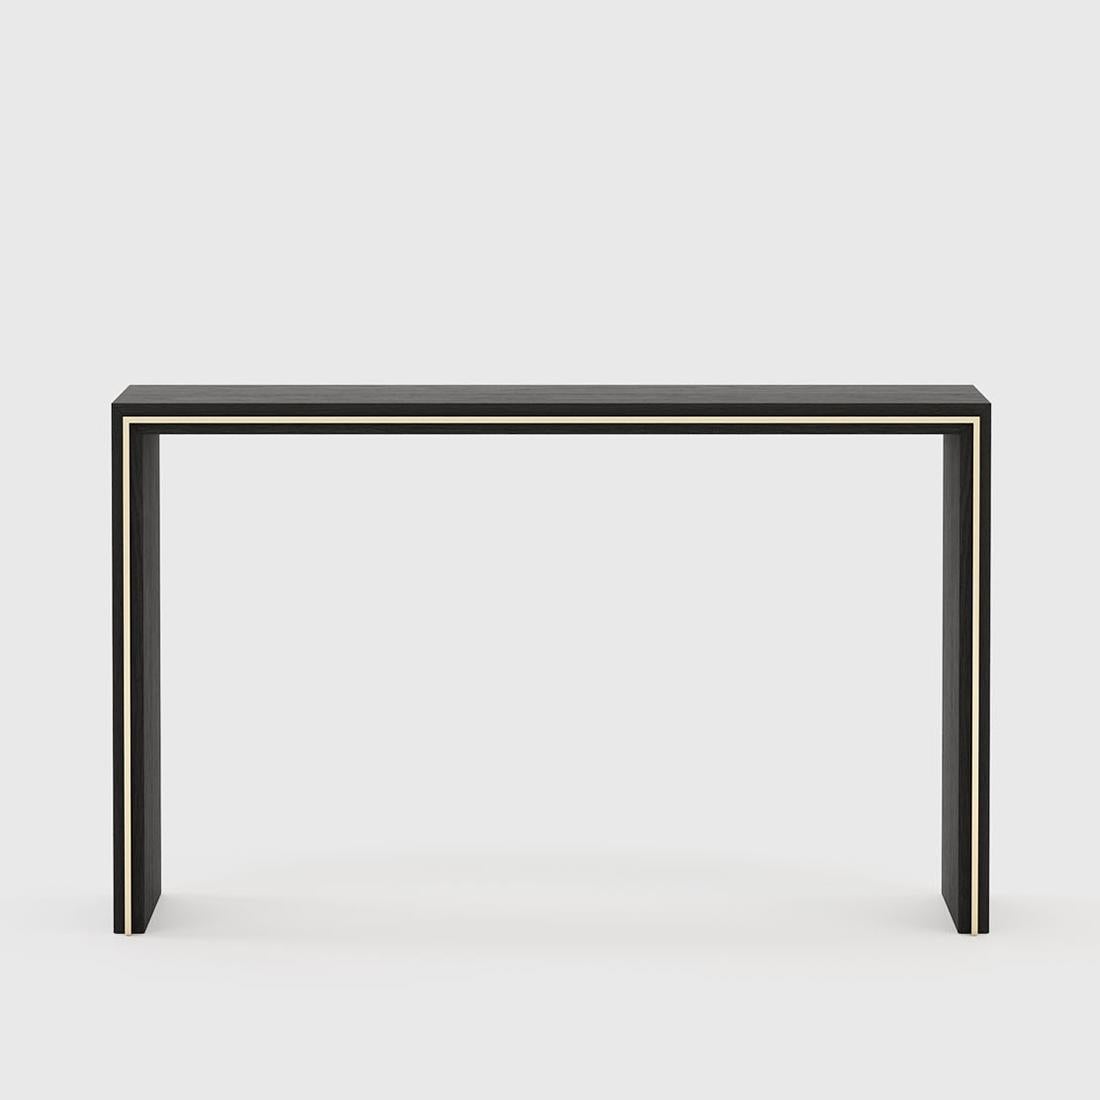 Table console ligne or avec structure en bois de frêne
en finition noircie mate avec garniture en acier inoxydable en finition dorée.
   